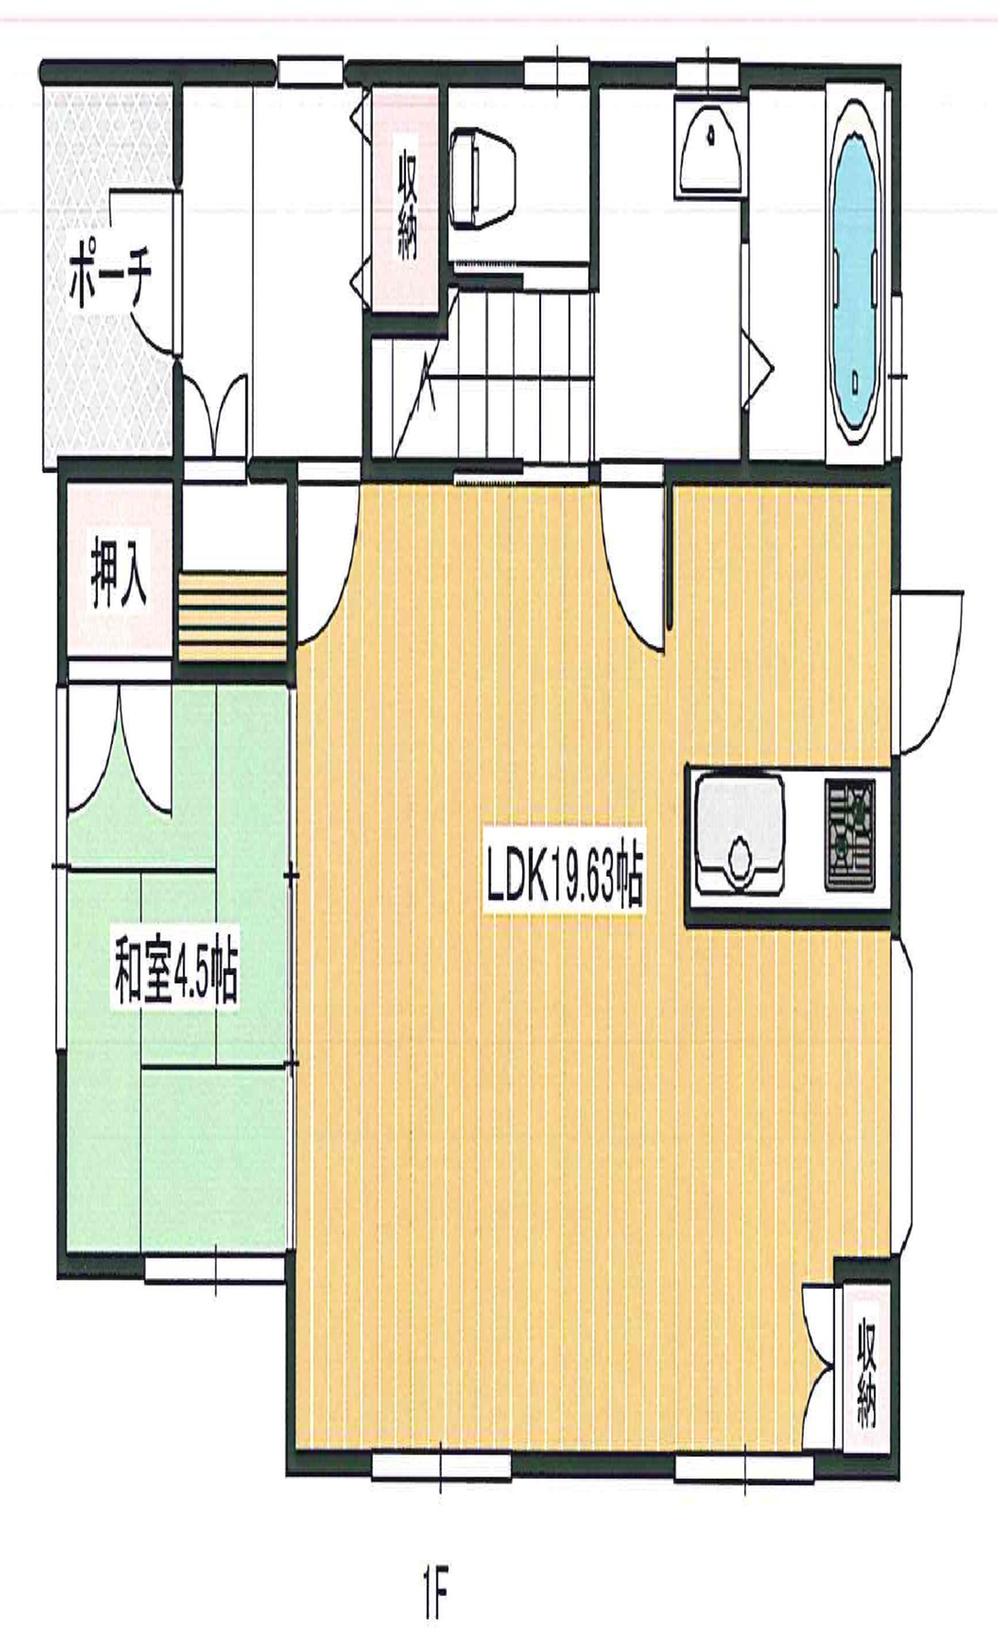 Floor plan. 24,900,000 yen, 4LDK + S (storeroom), Land area 175 sq m , Building area 106.81 sq m 1F (19.8LDK ・ 4.5 sum)